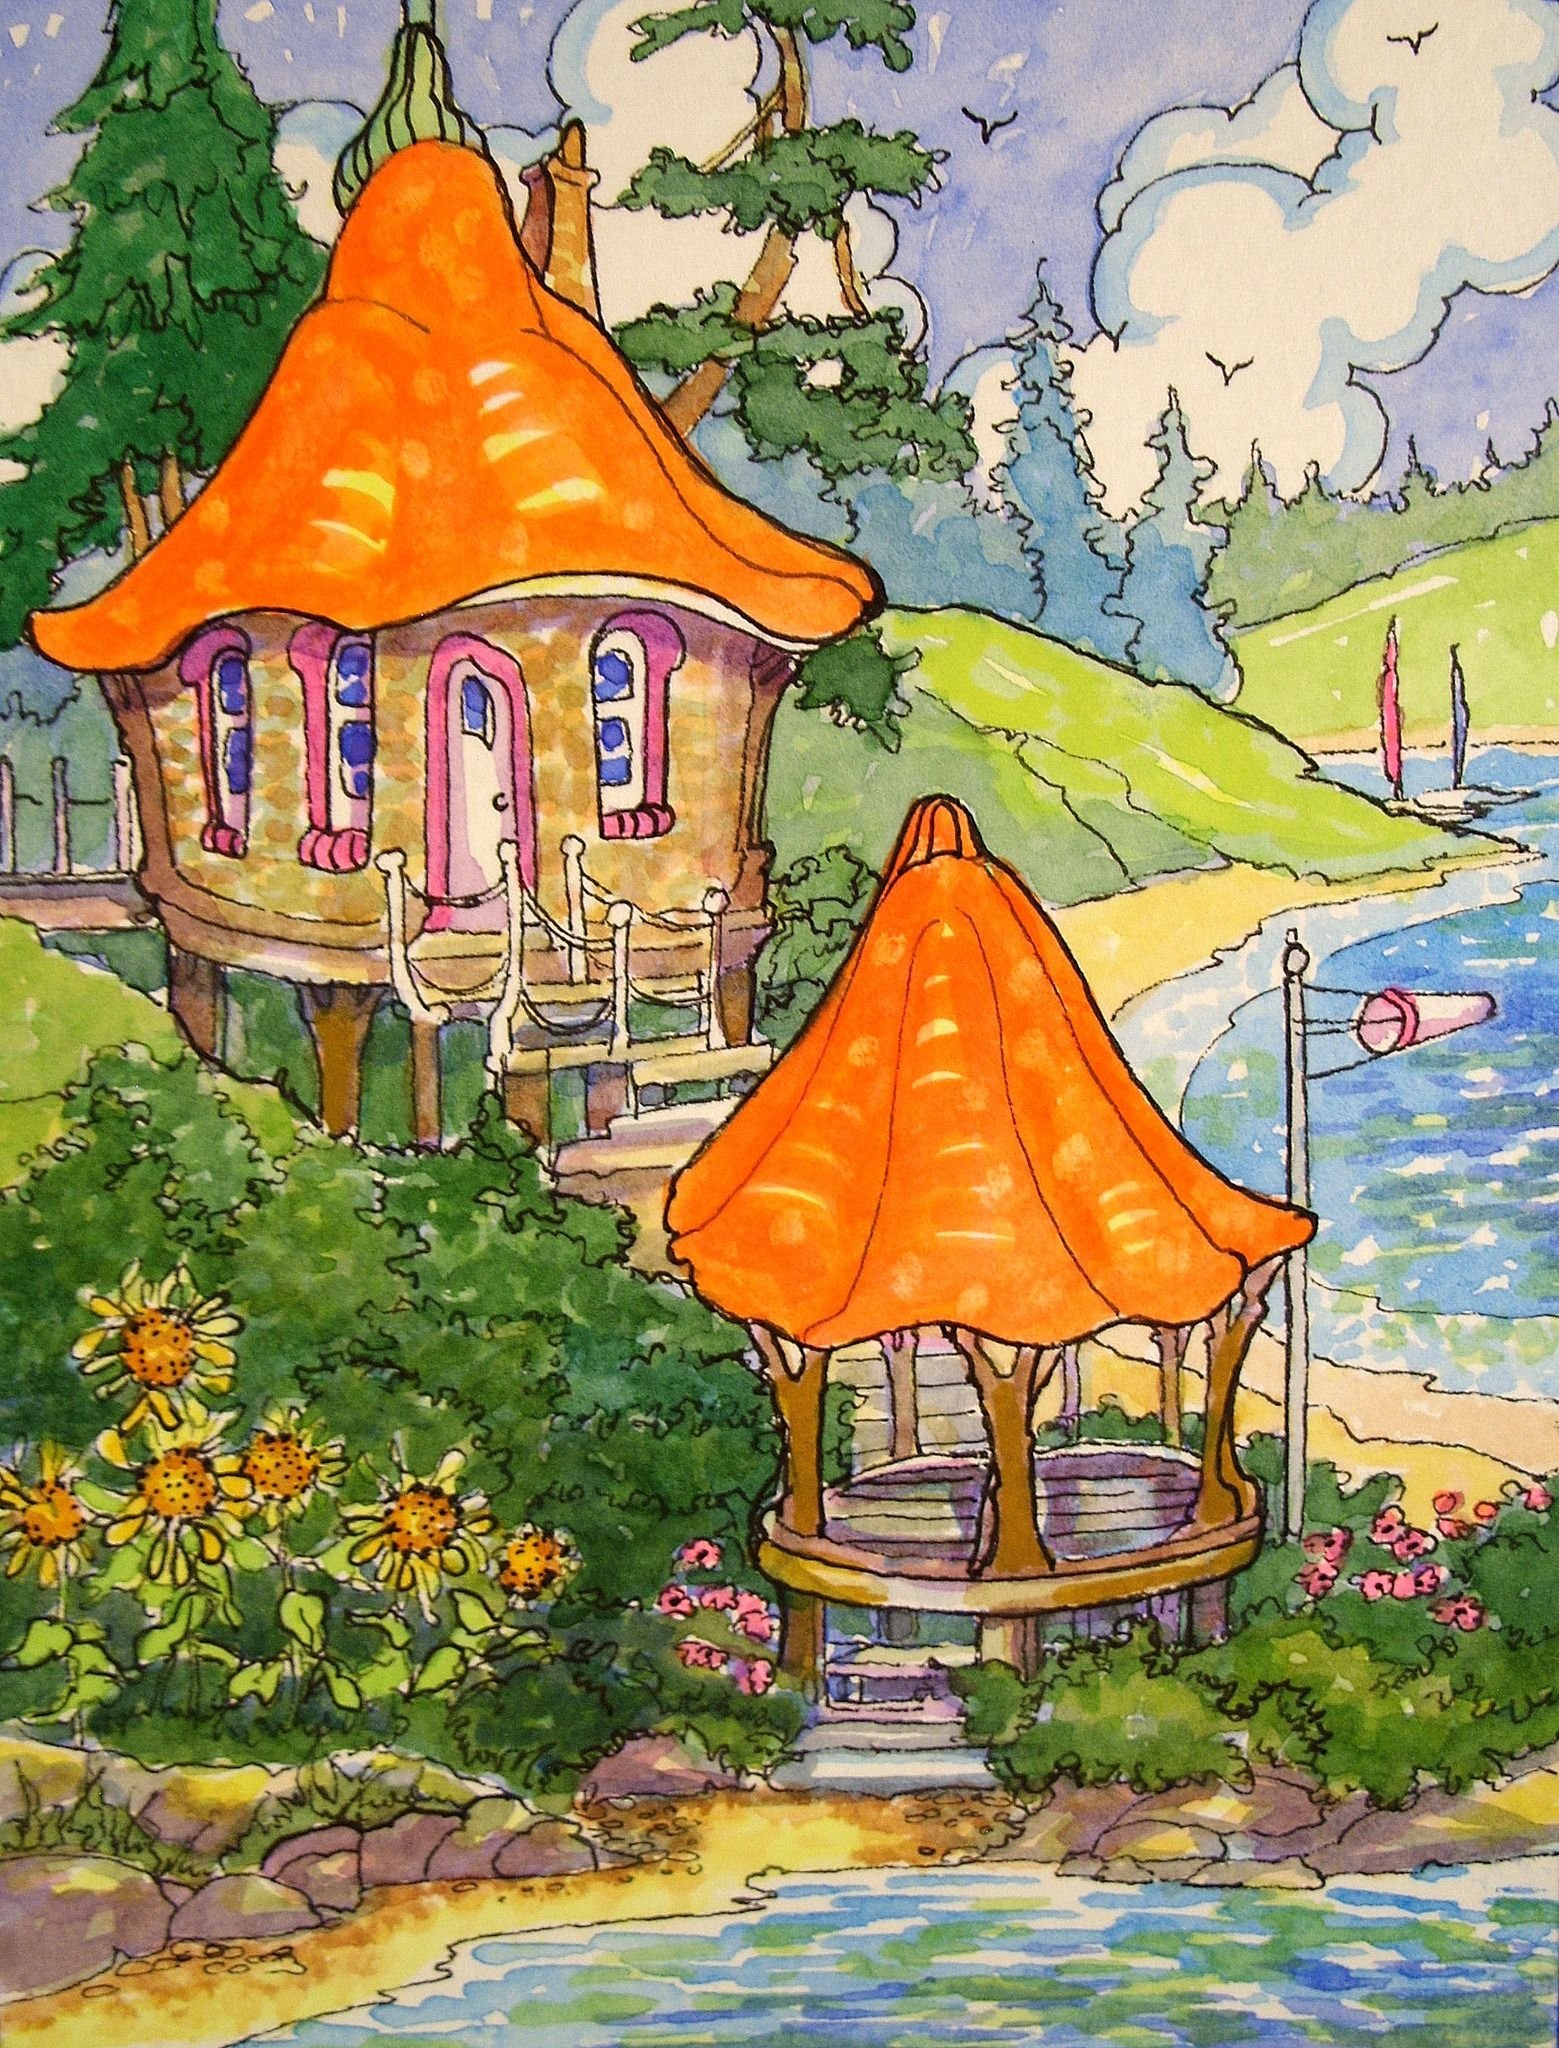 Сказочный домик иллюстрация